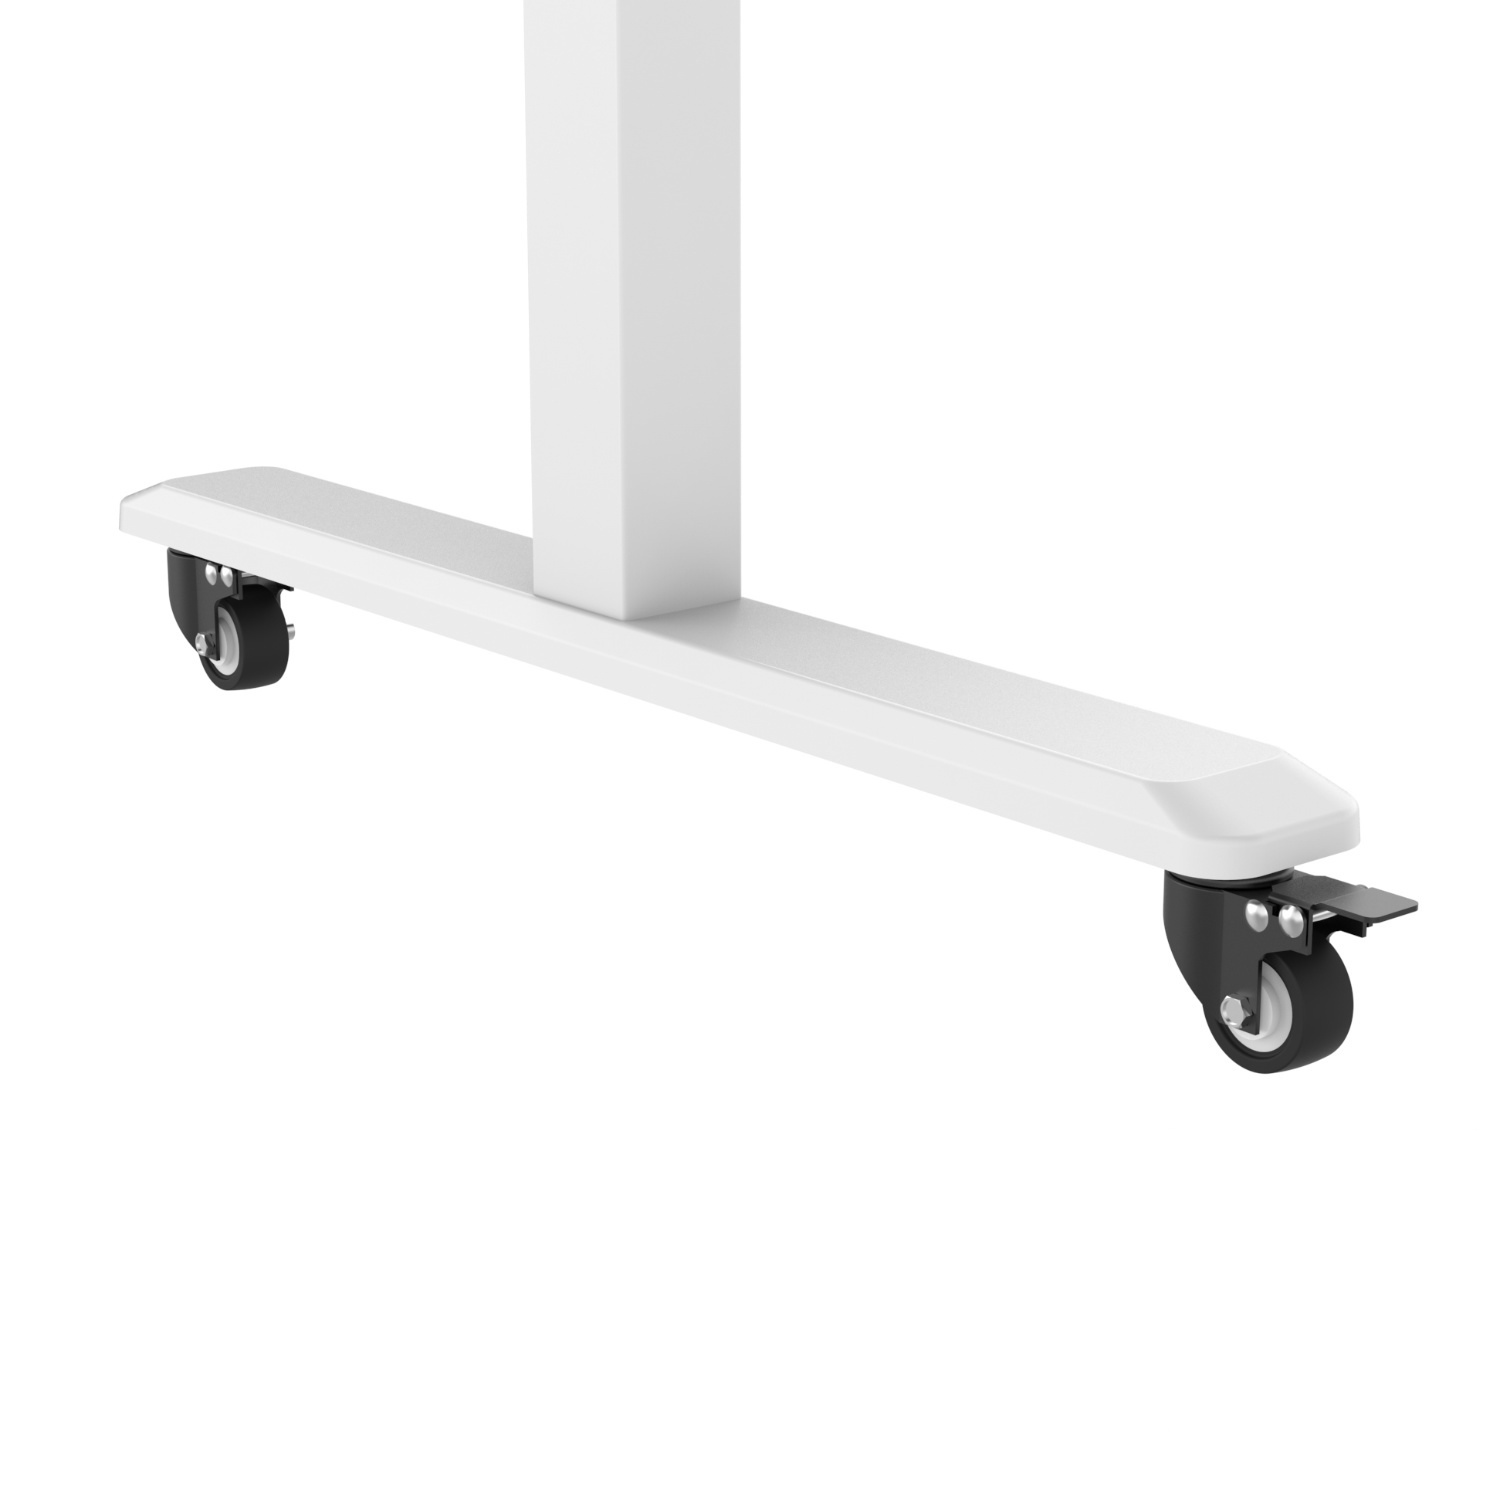 Tischgestell Handkurbel mit HOKO Höhenverstellbare Schreibtisch-Füße